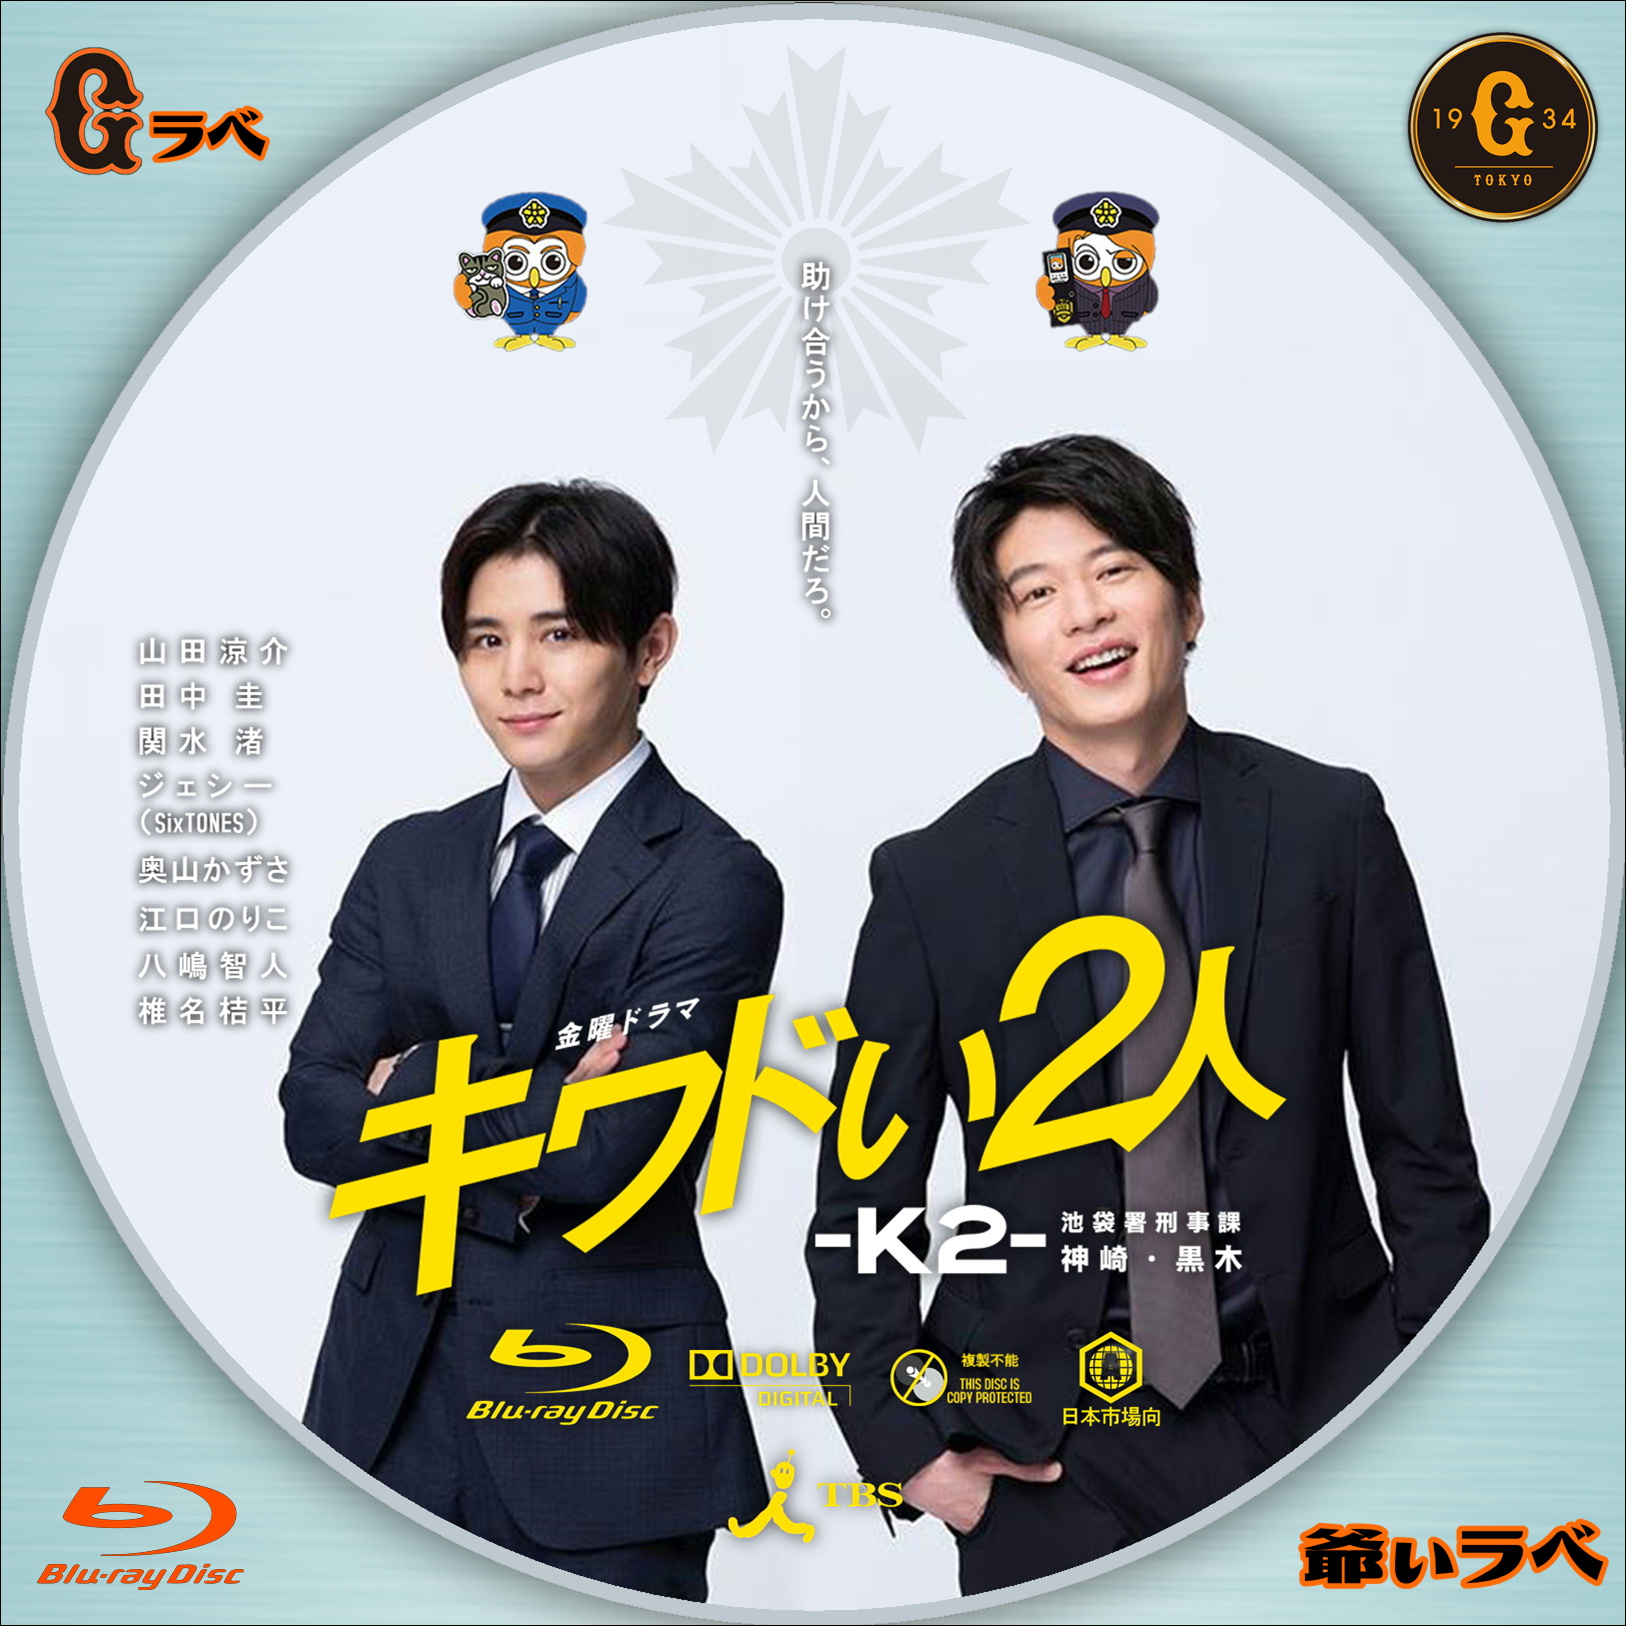 キワドい2人-K2-池袋署刑事課神崎 黒木 Blu-ray BOX〈3枚組〉 Kikan 